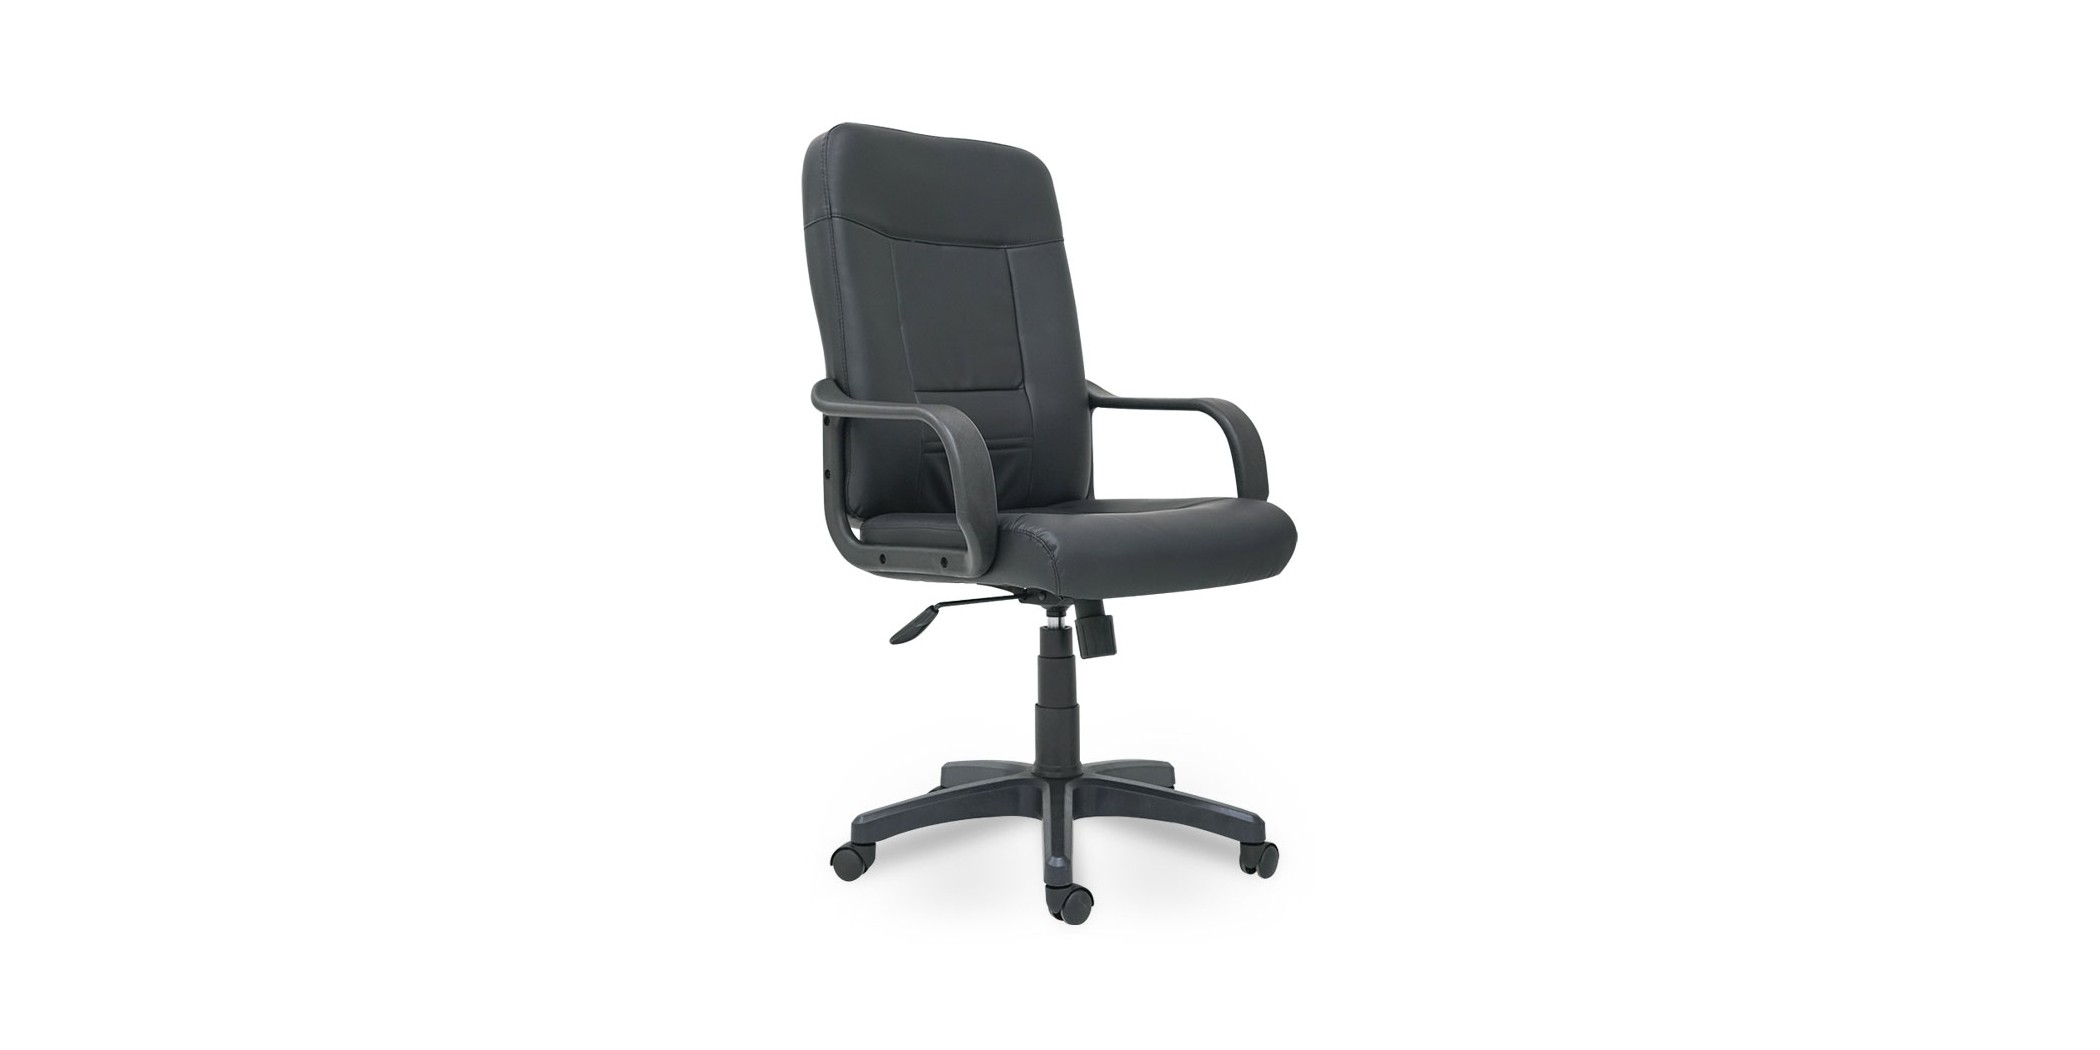 Laska Mid Back Office Chair Black With Armrest